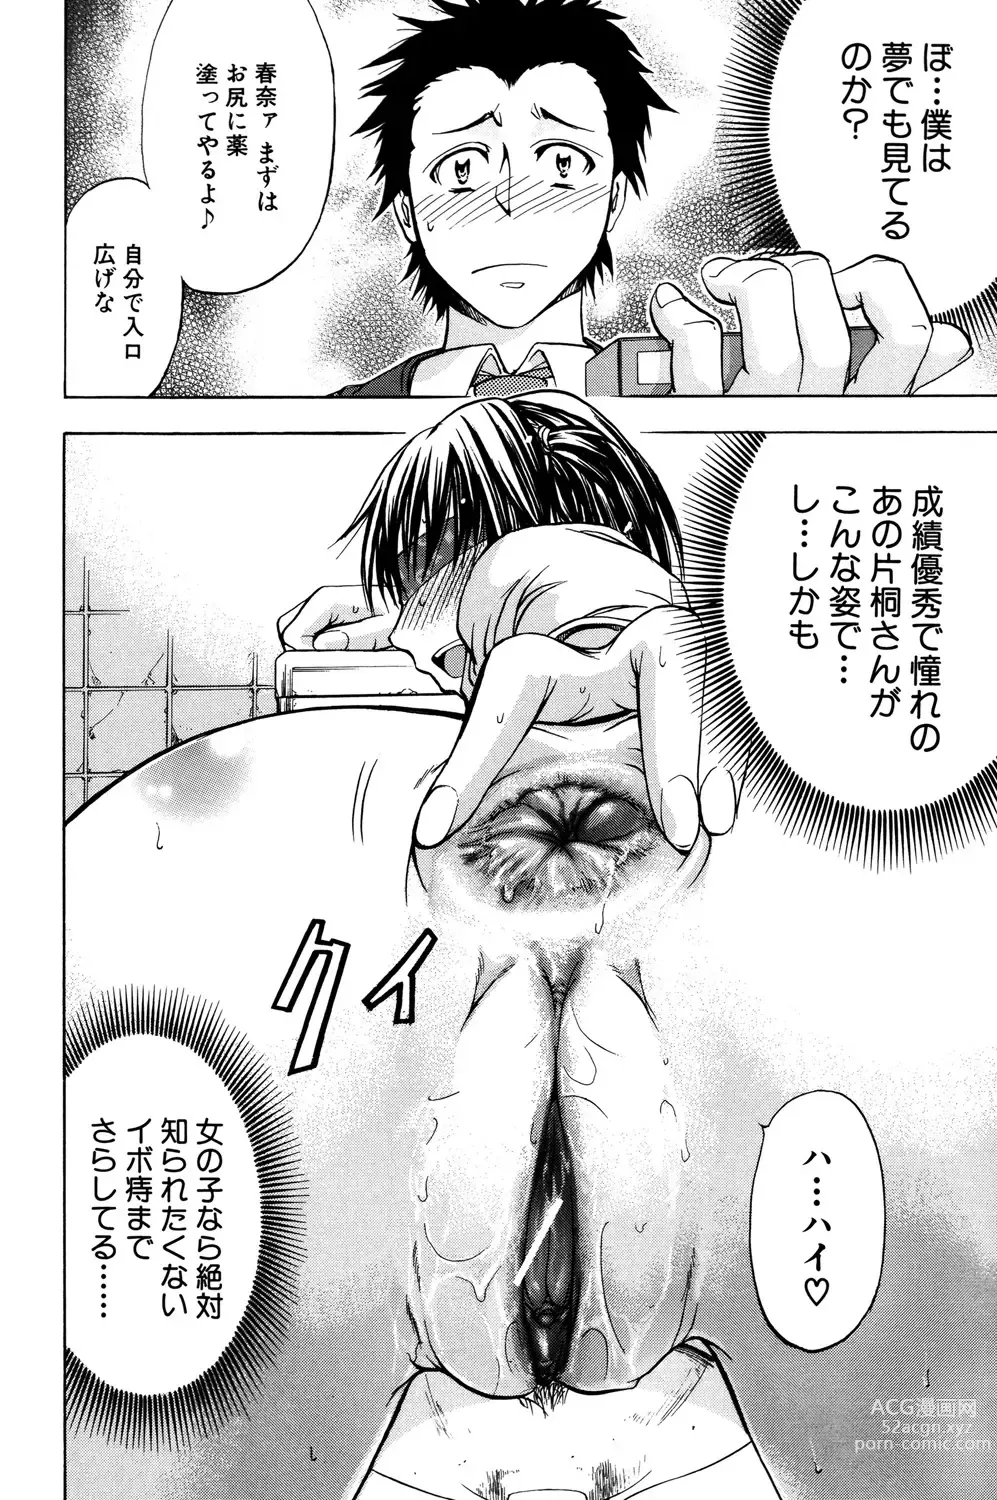 Page 13 of manga ANAL BACKER